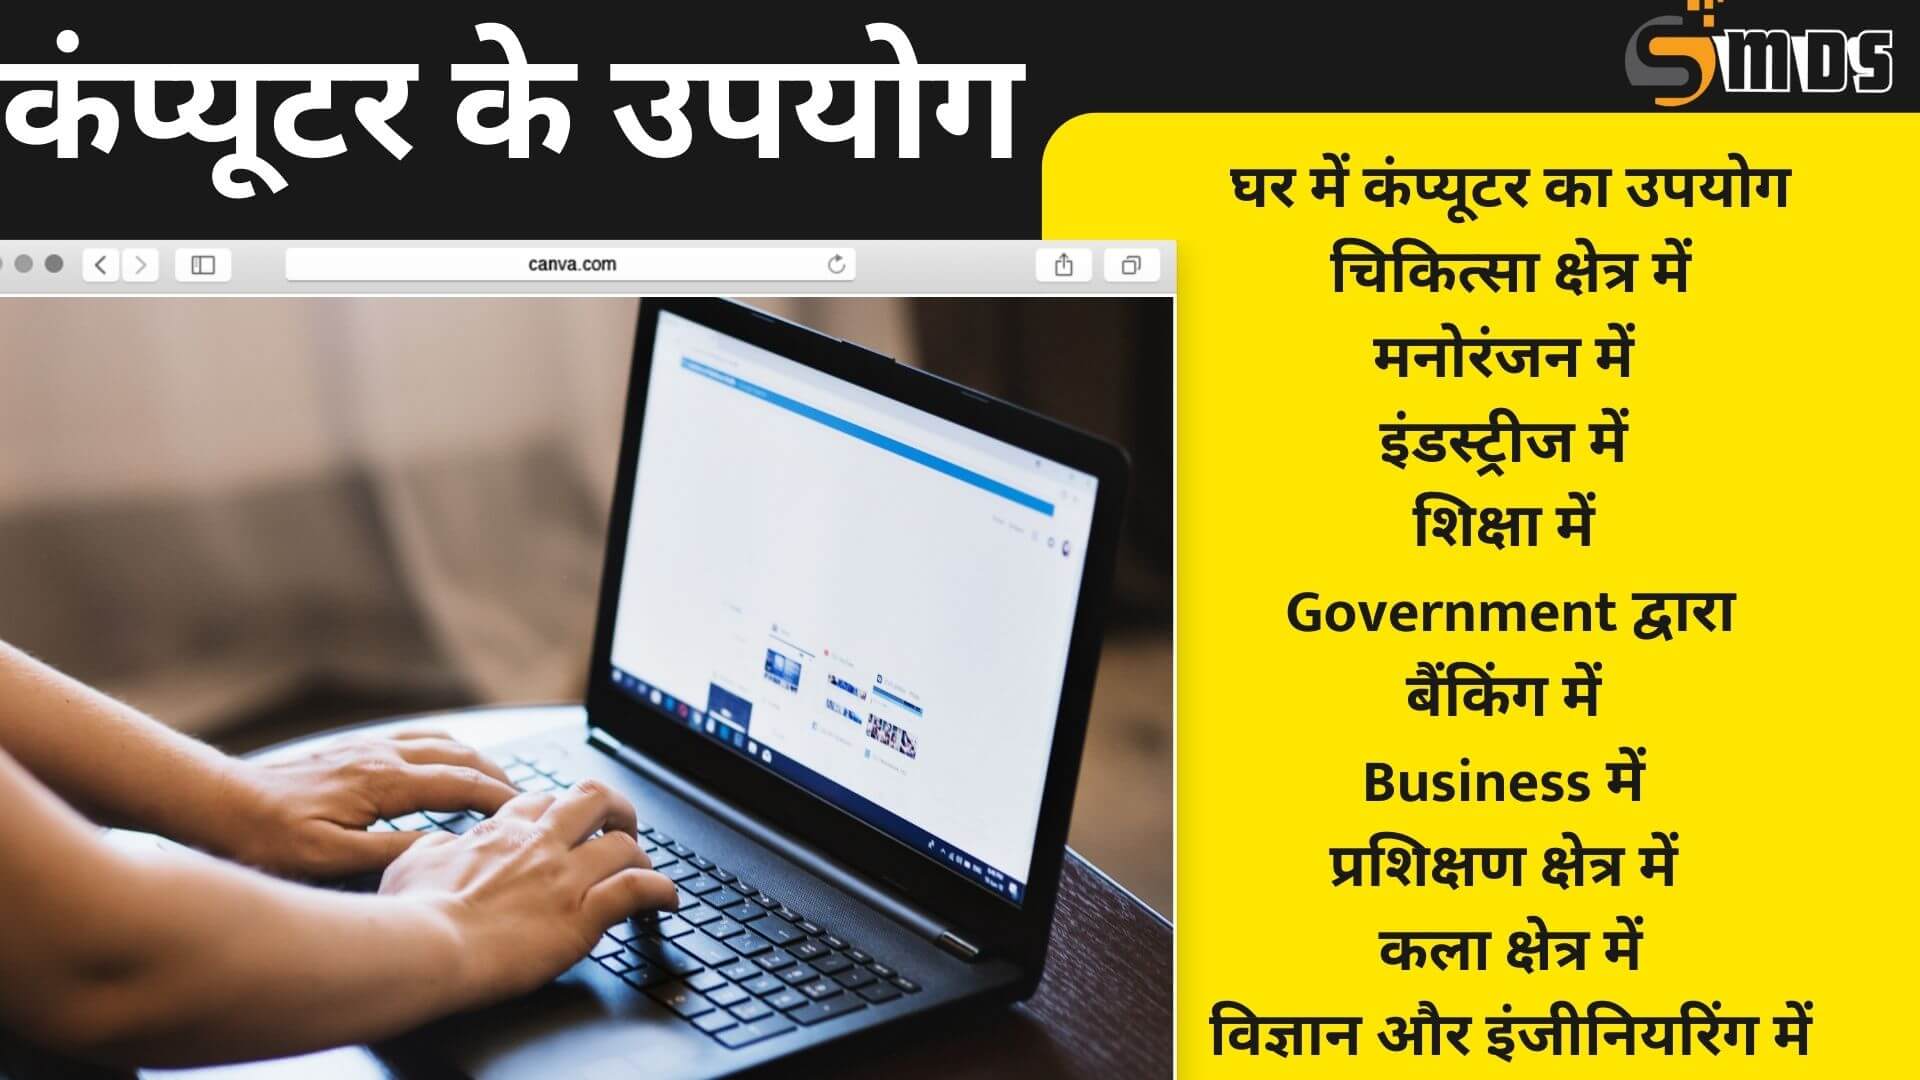 कंप्यूटर के उपयोग - Use of computer in Hindi